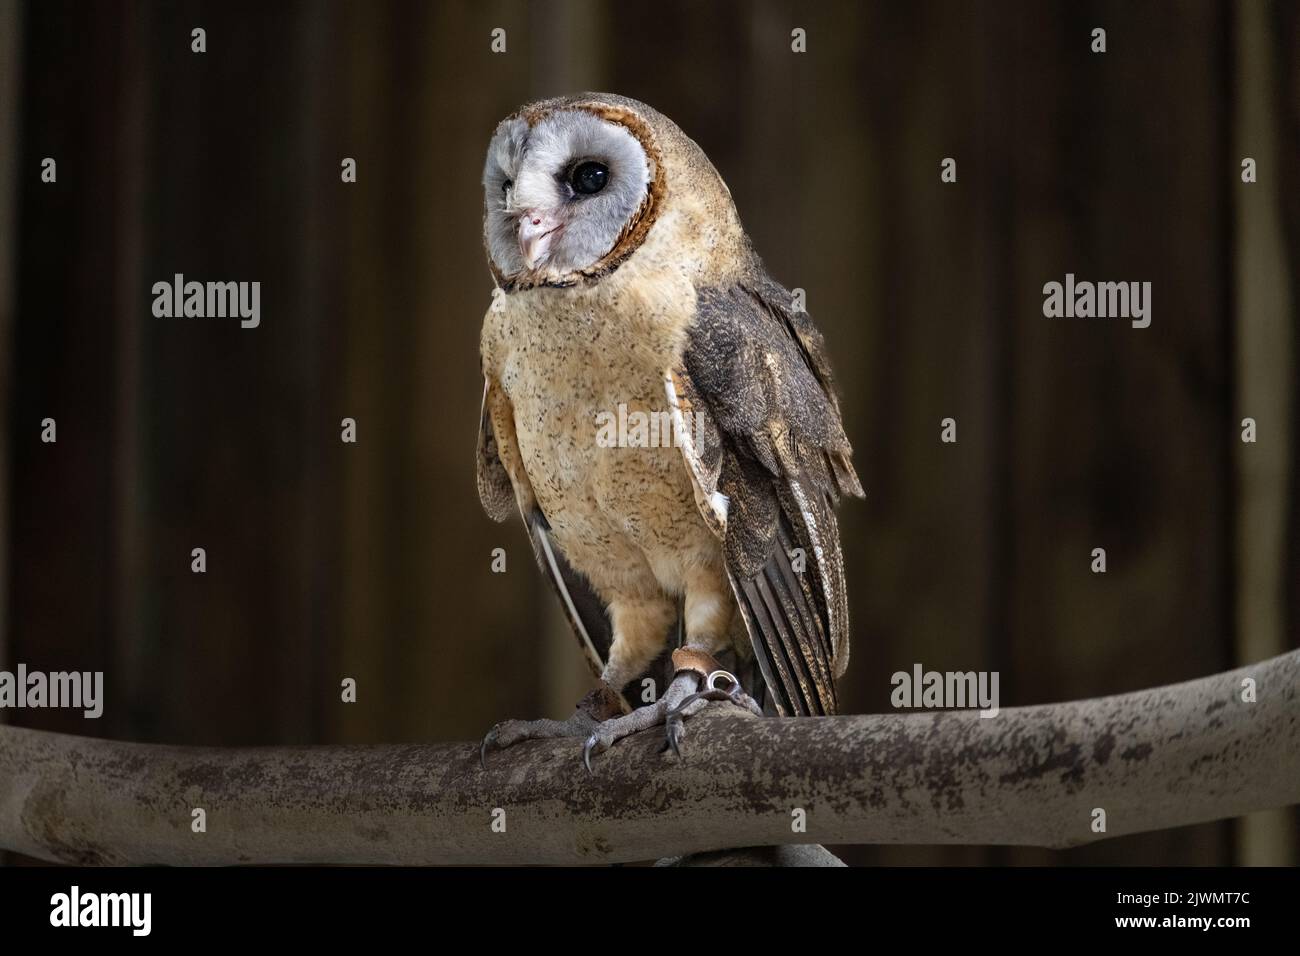 Ashey faced owl on a perch Stock Photo